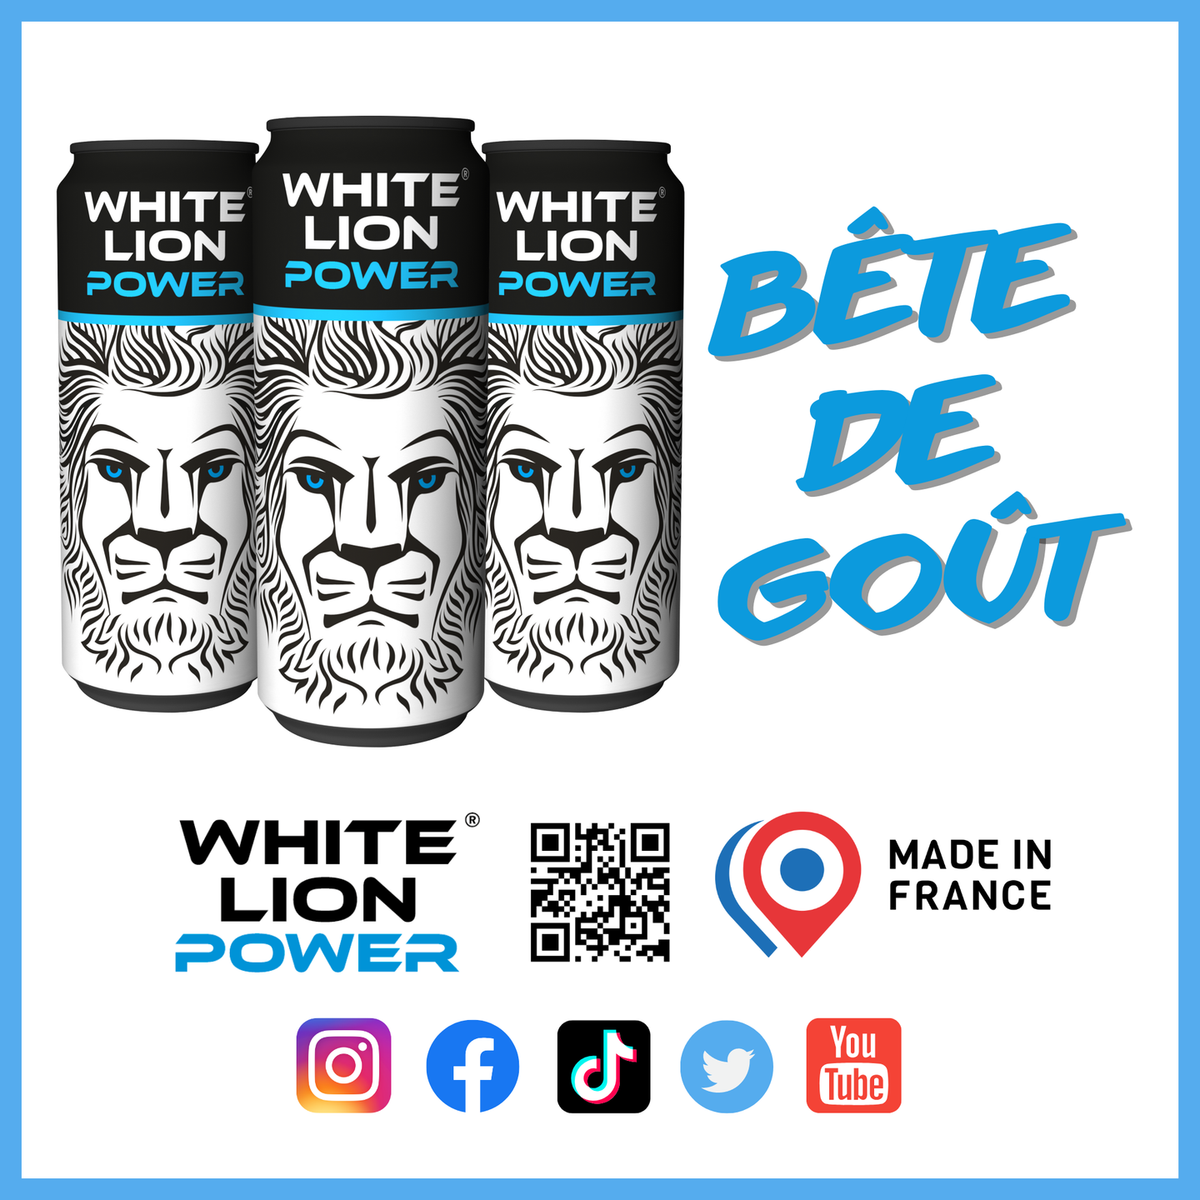 White Lion Power